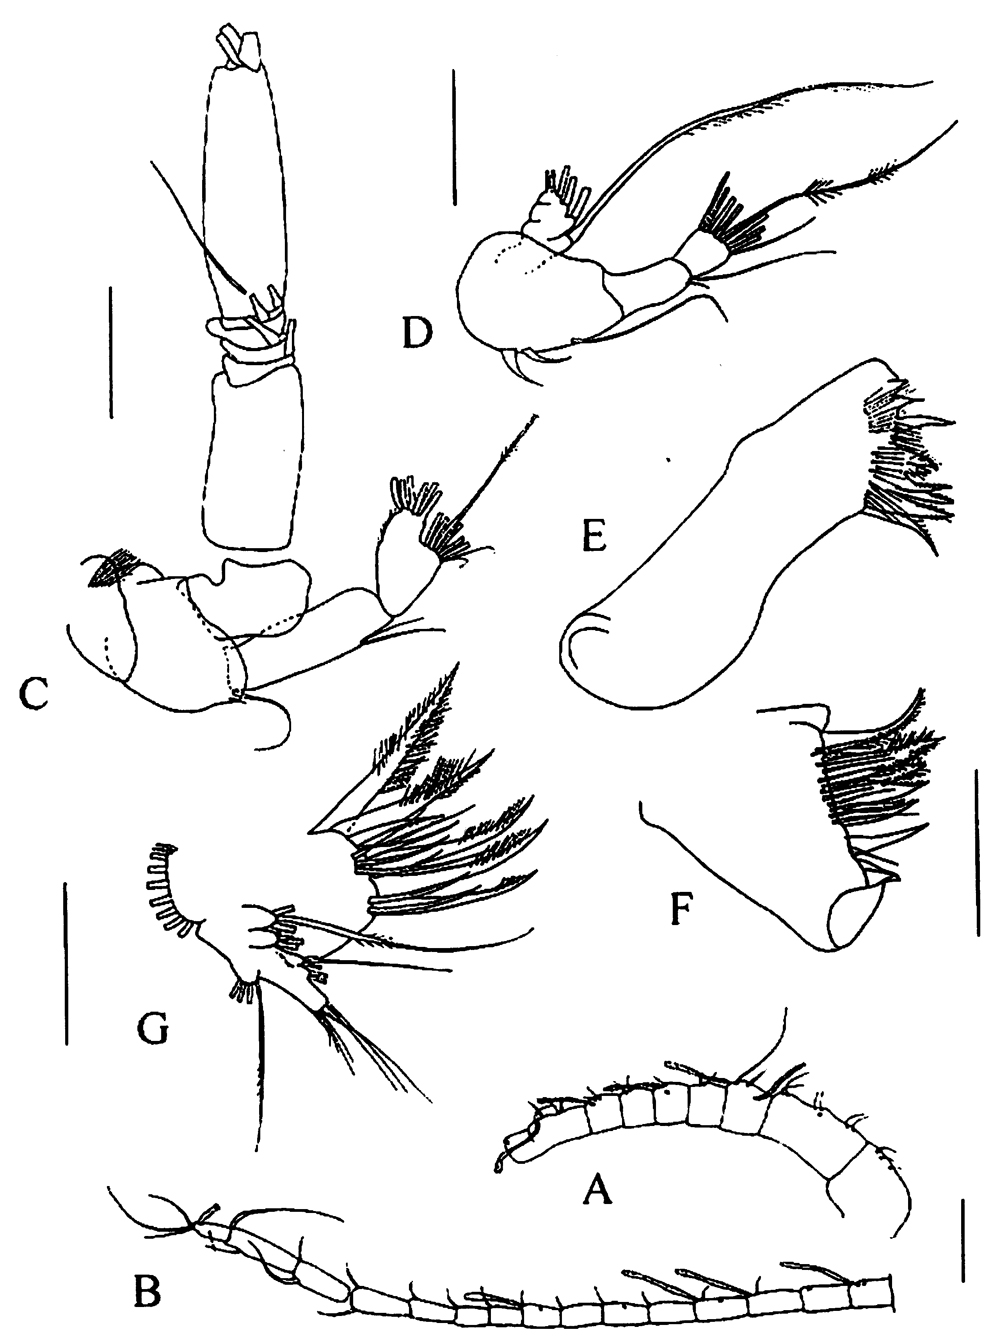 Espce Tharybis juhlae - Planche 2 de figures morphologiques